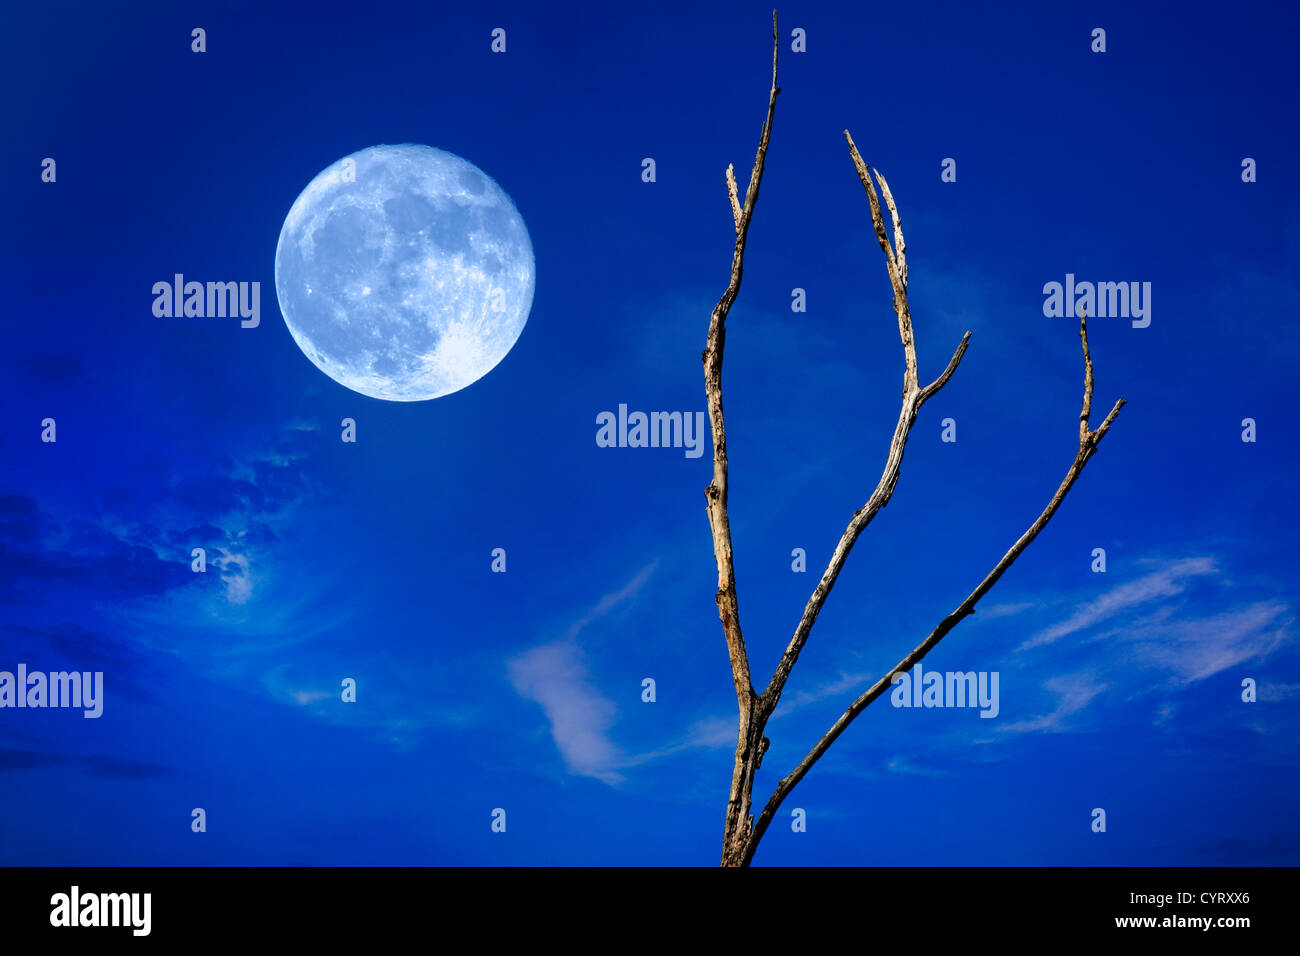 Una luna piena in aumento contro un profondo blu del cielo al crepuscolo con Wispy nuvole e un albero sfrondato, questo è un composito digitale Foto Stock